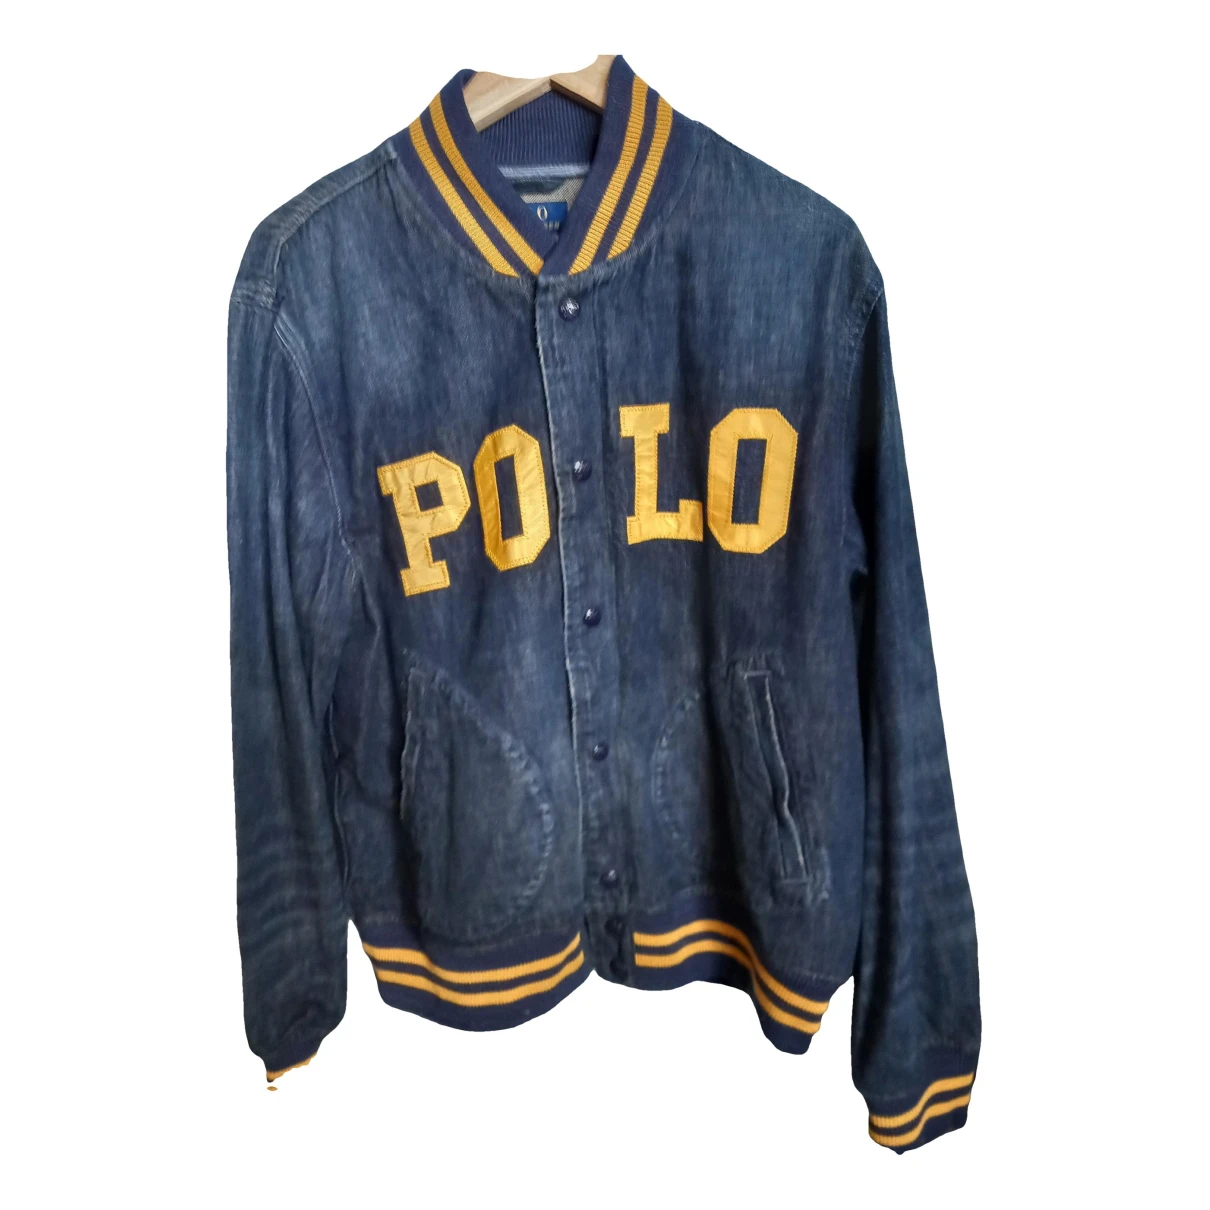 Pre-owned Polo Ralph Lauren Vest In Navy